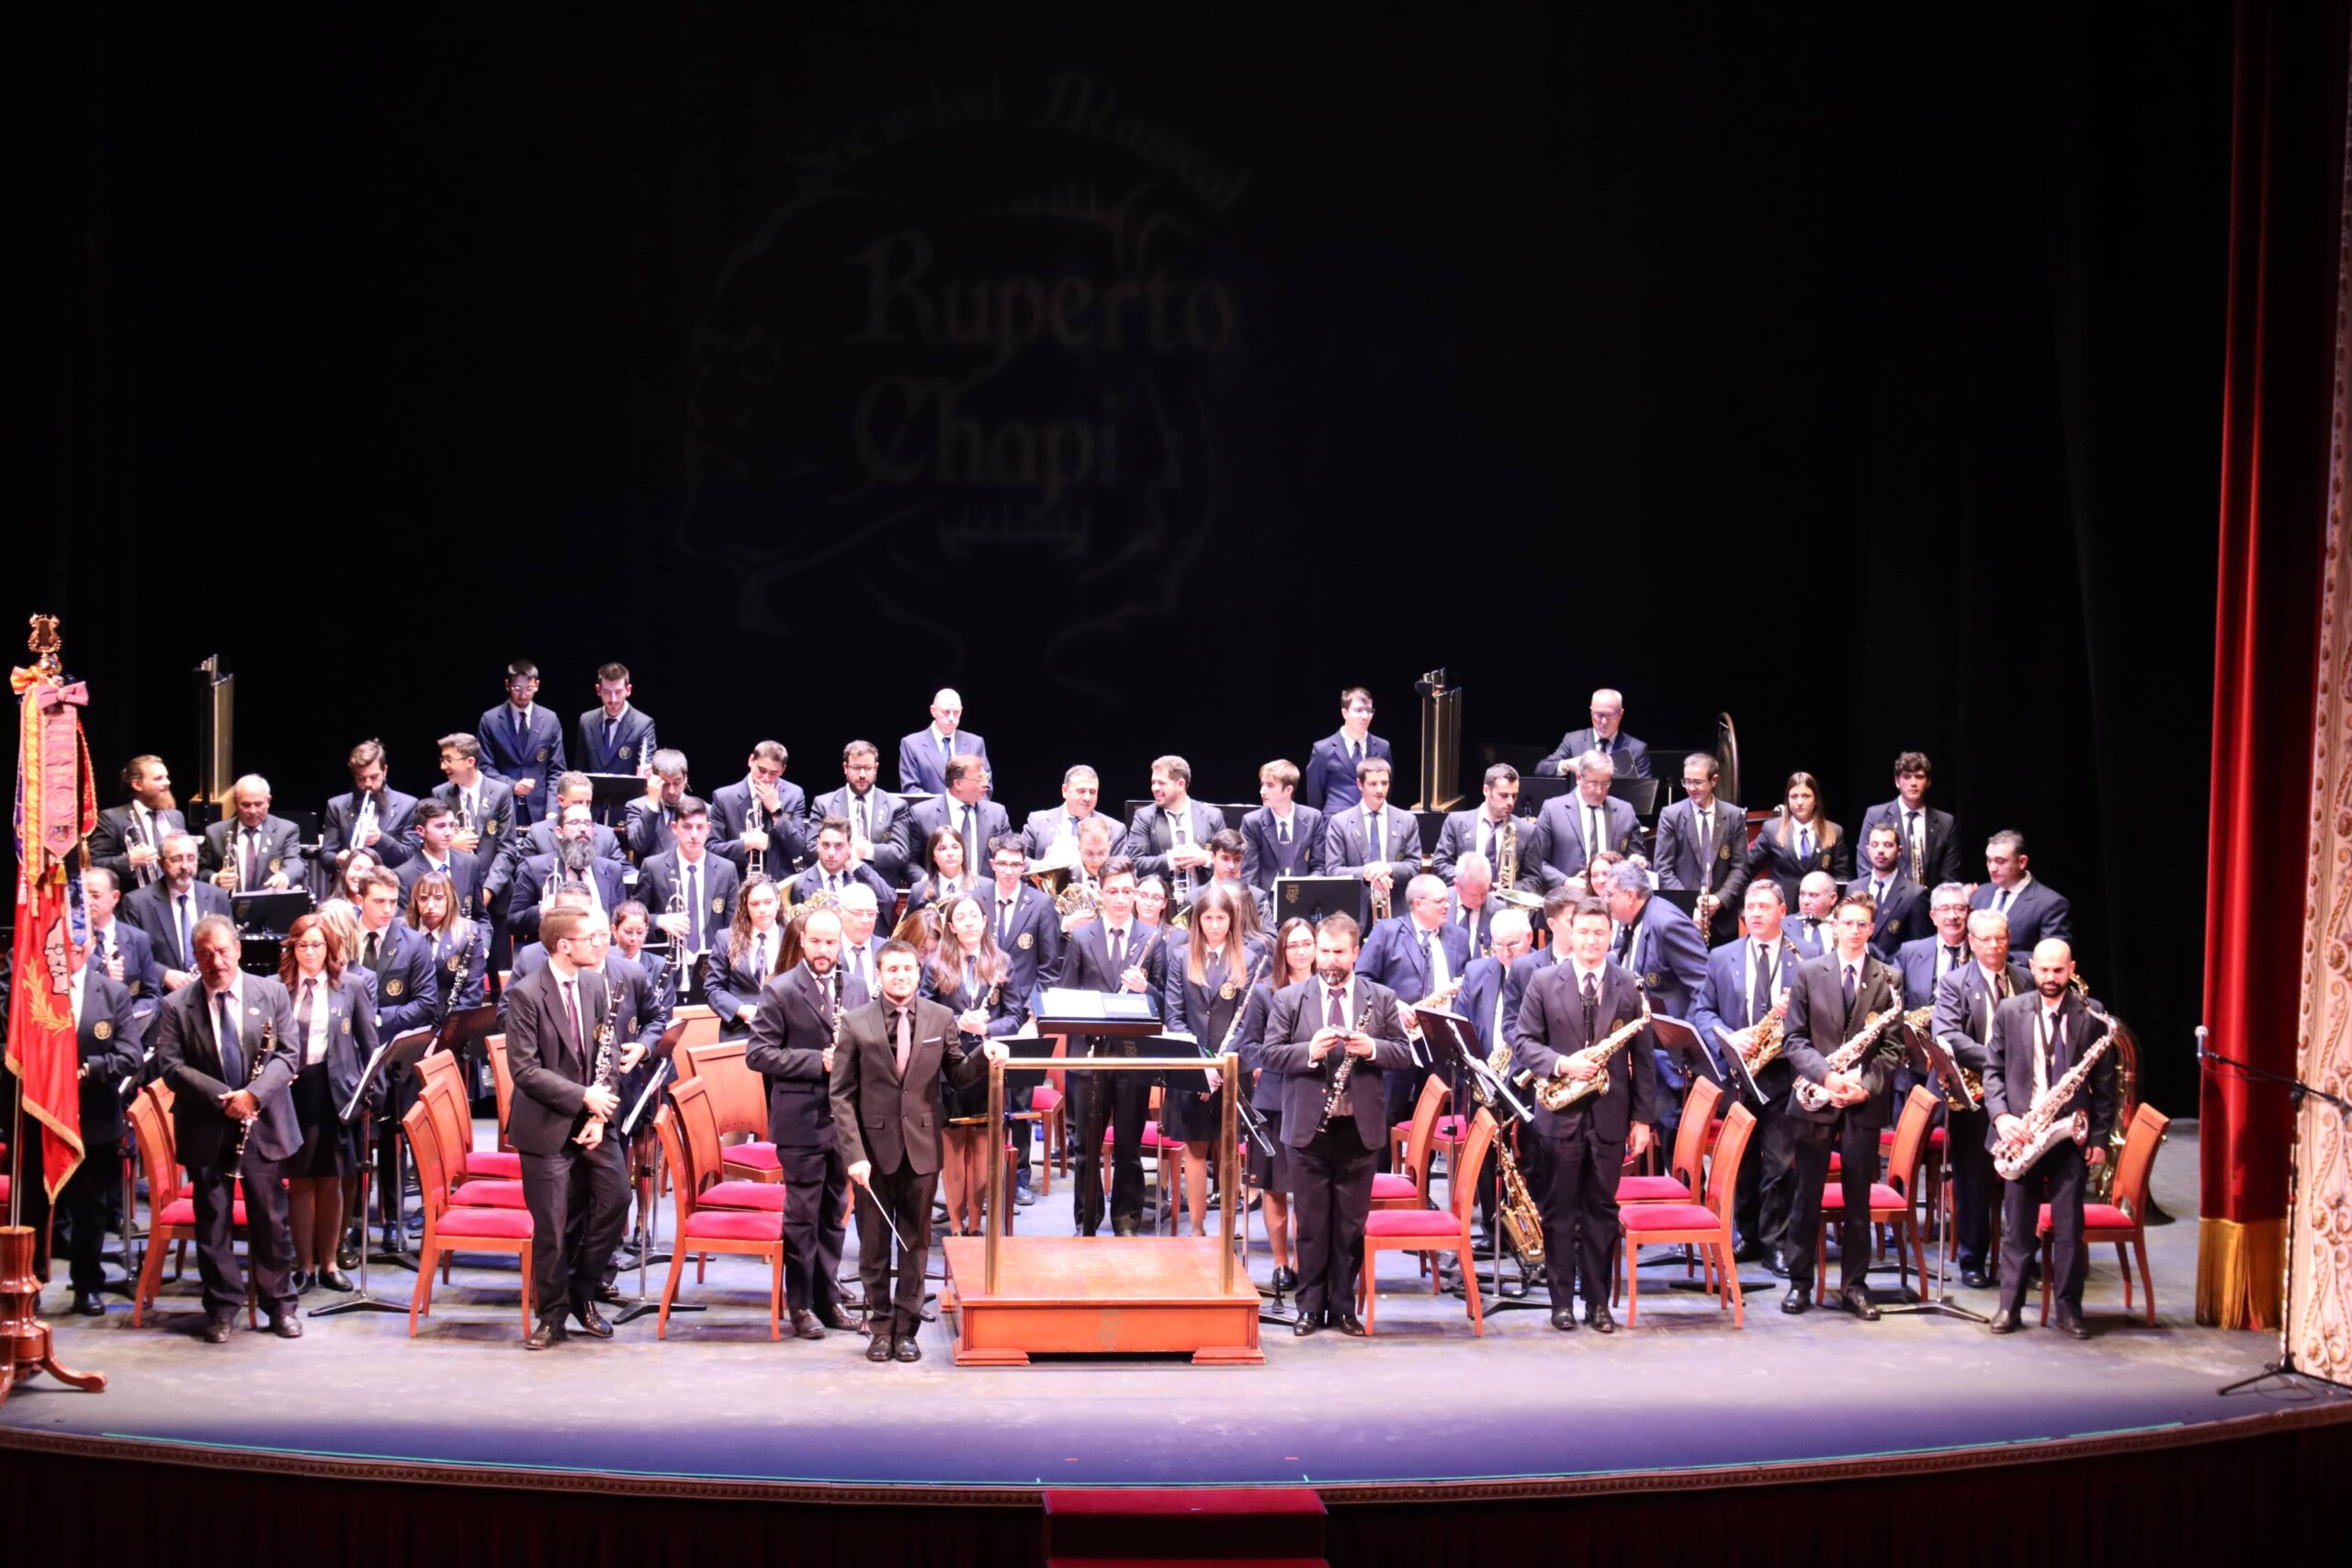 Magnífico concierto de la Sociedad Musical a cargo de Josep Perpinyà